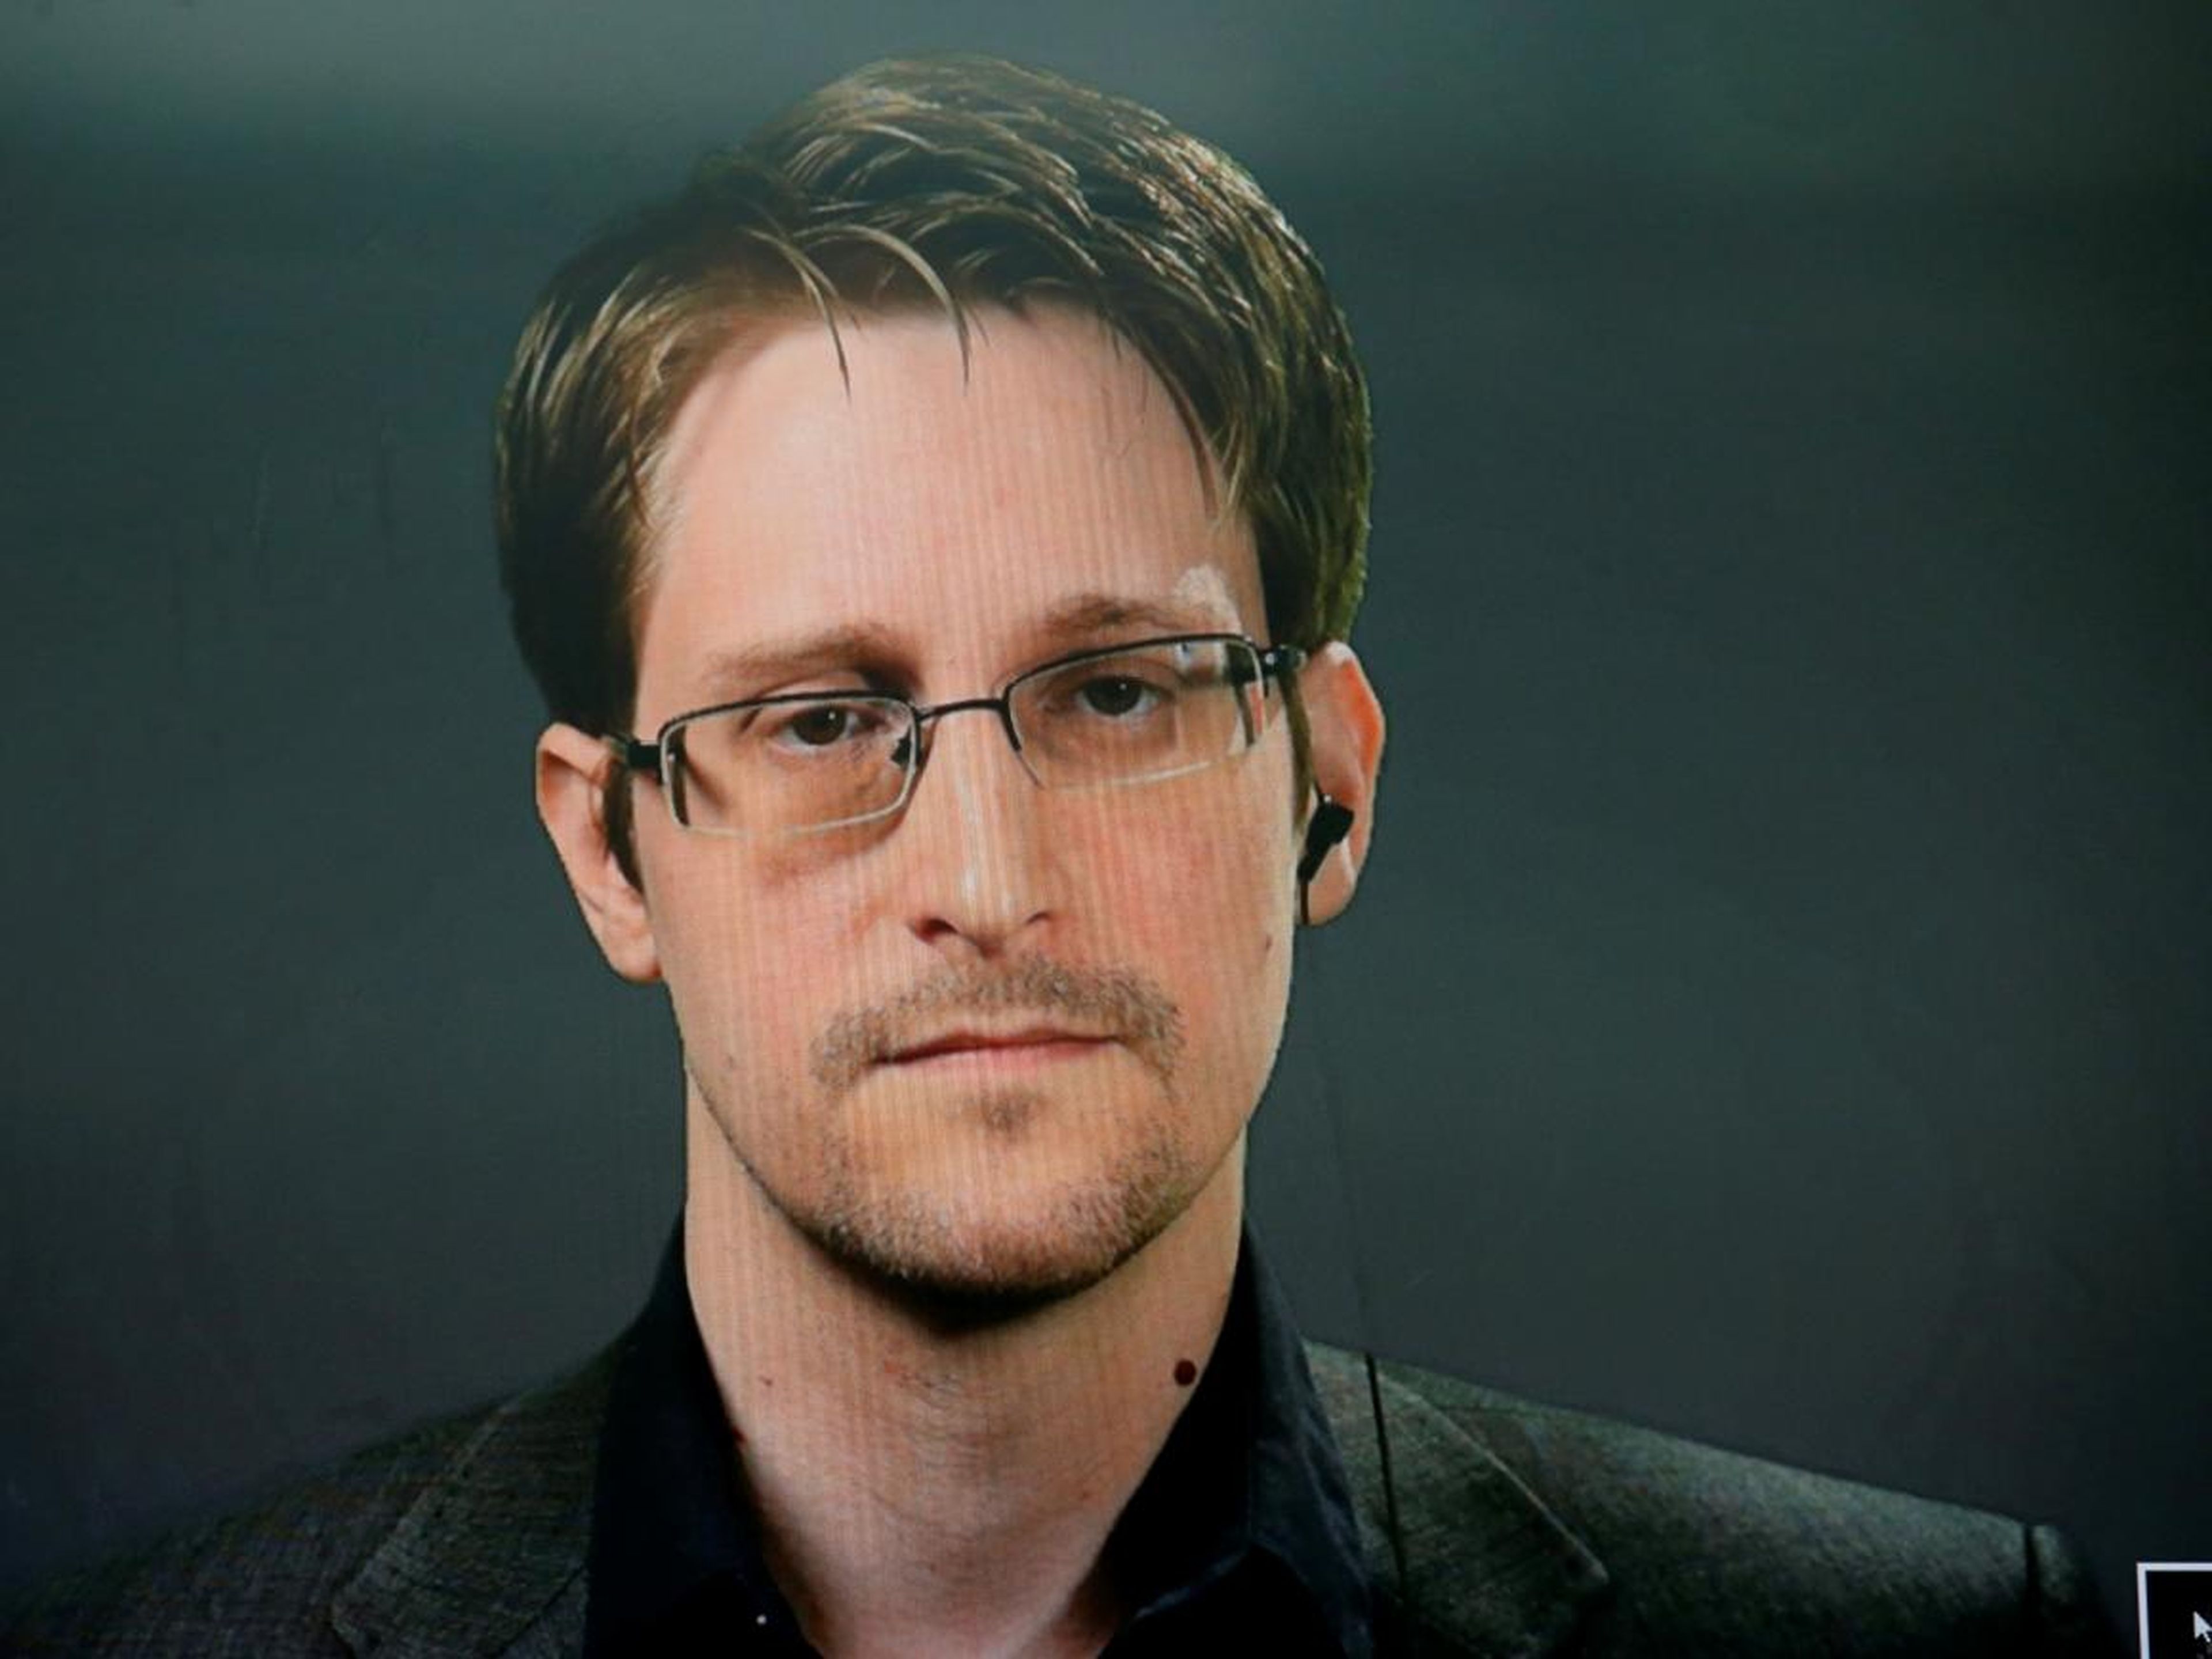 FOTO DE ARCHIVO: Edward Snowden habla en un vídeo durante una conferencia de prensa en Nueva York.